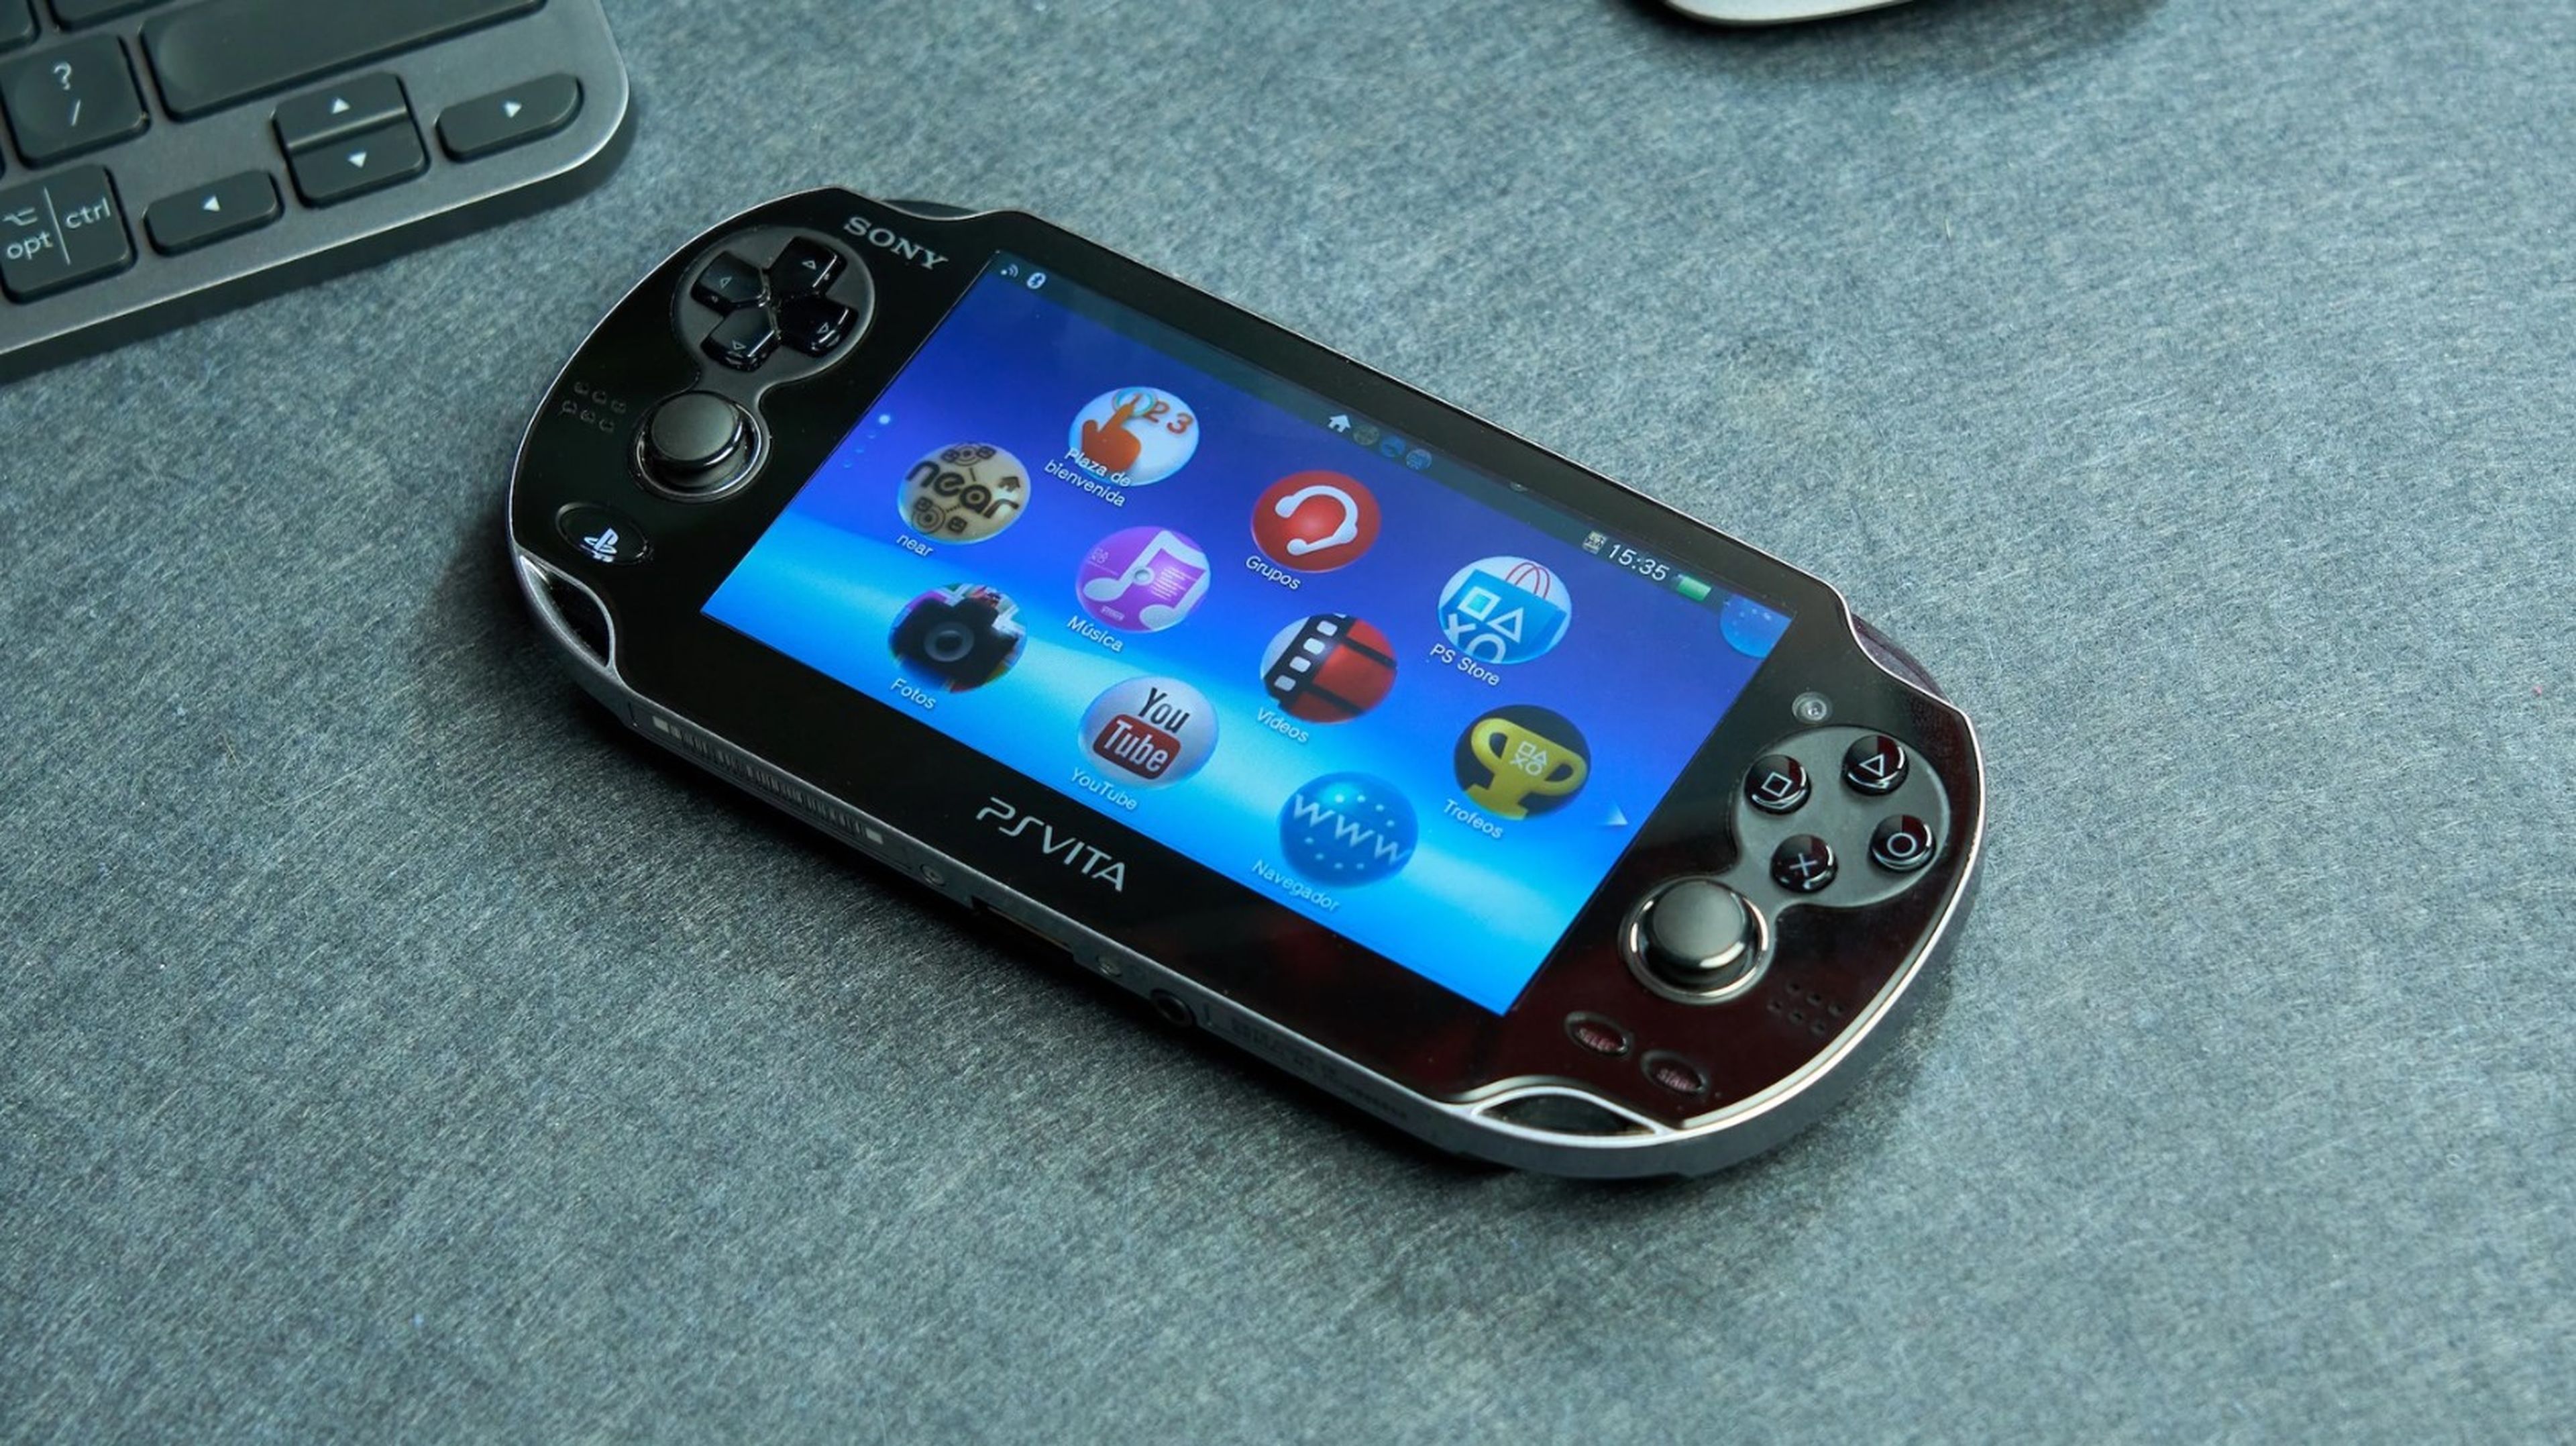 Las mejores ofertas en Azul Sony Playstation Vita consolas de videojuegos